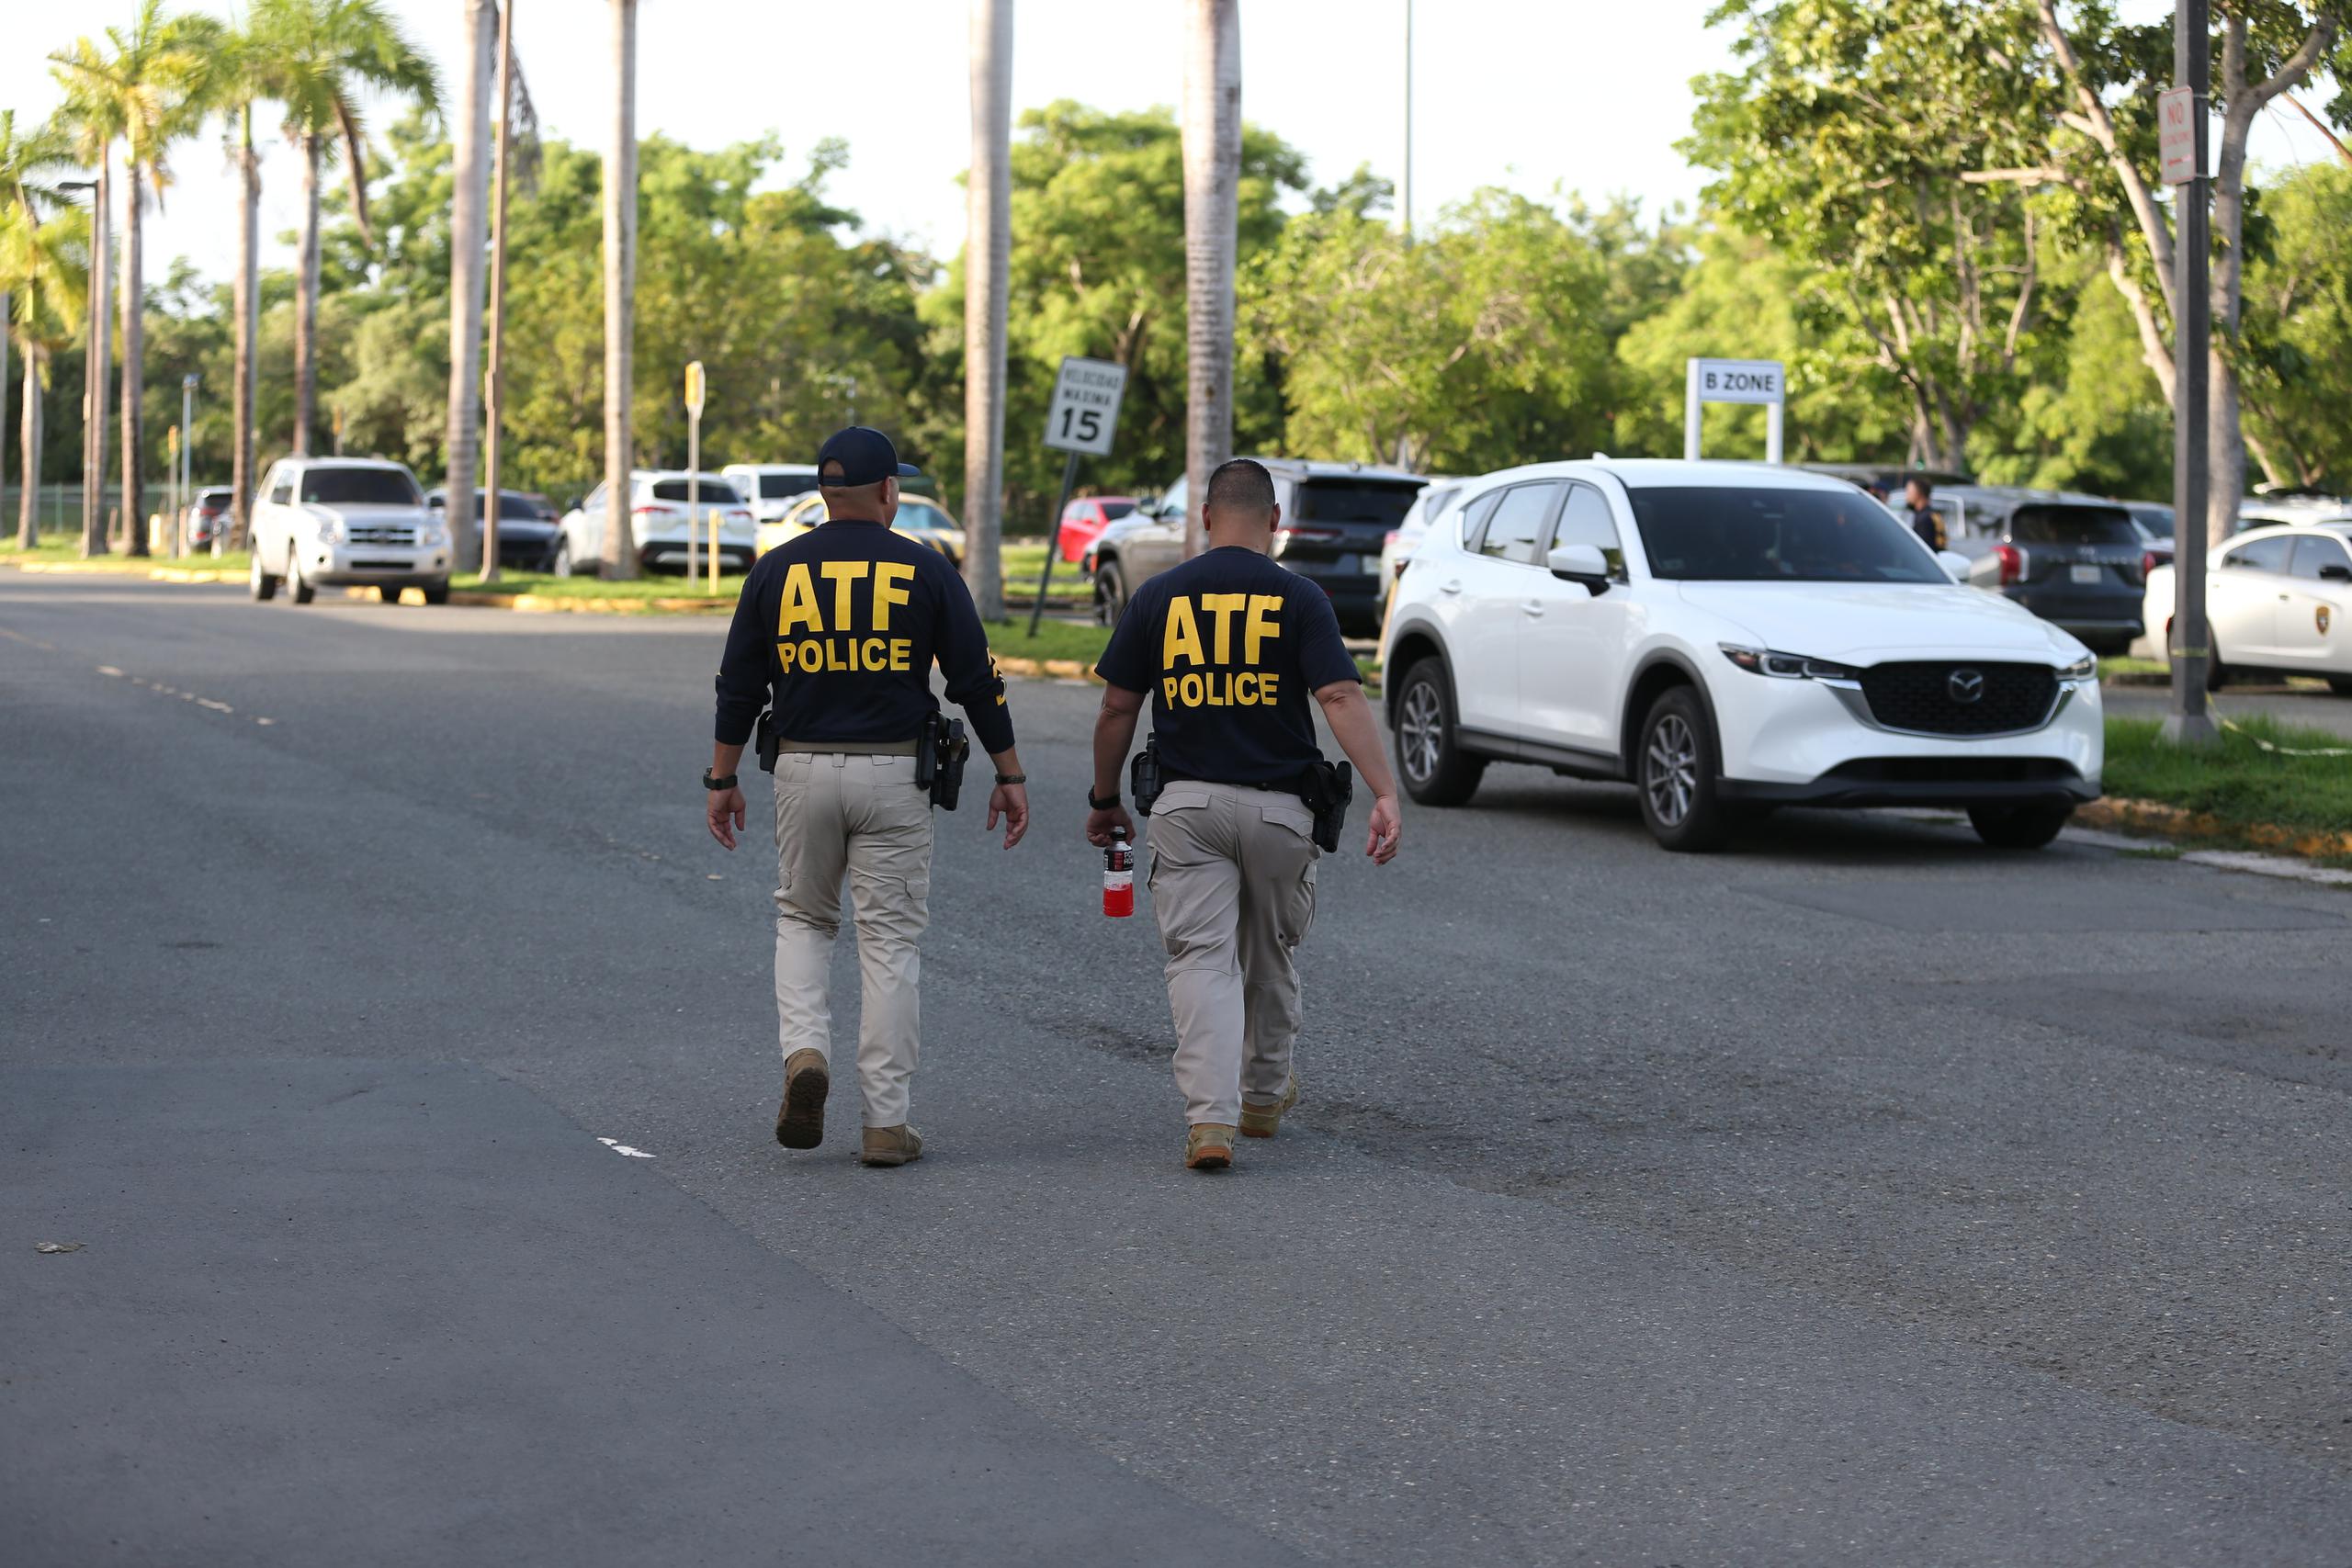 Dos de los agentes que participaron de un operativo del ATF en San Juan. Los arrestados fueron llevados al coliseo Roberto Clemente en San Juan.